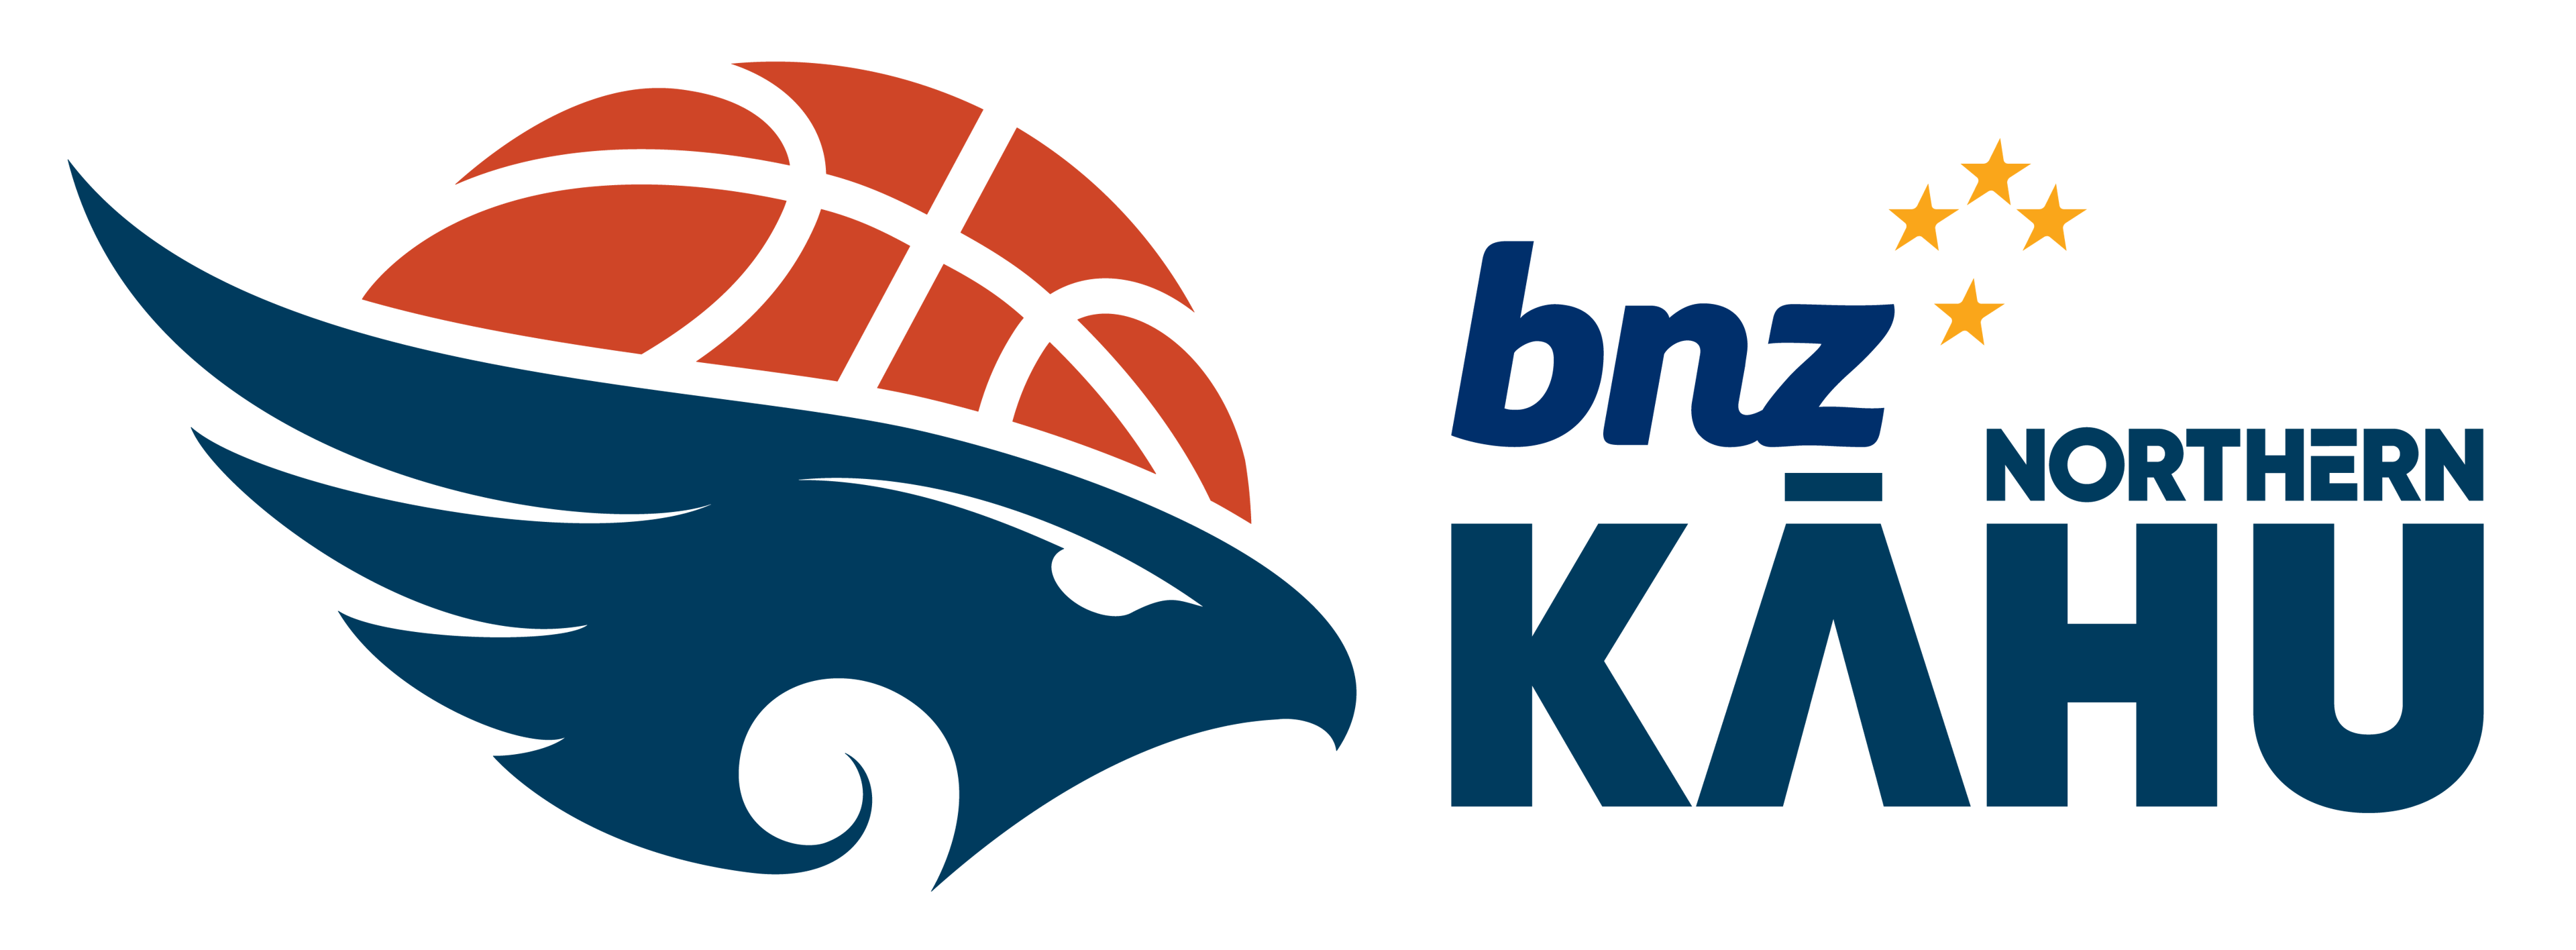 Northern Kahu Basketball logo